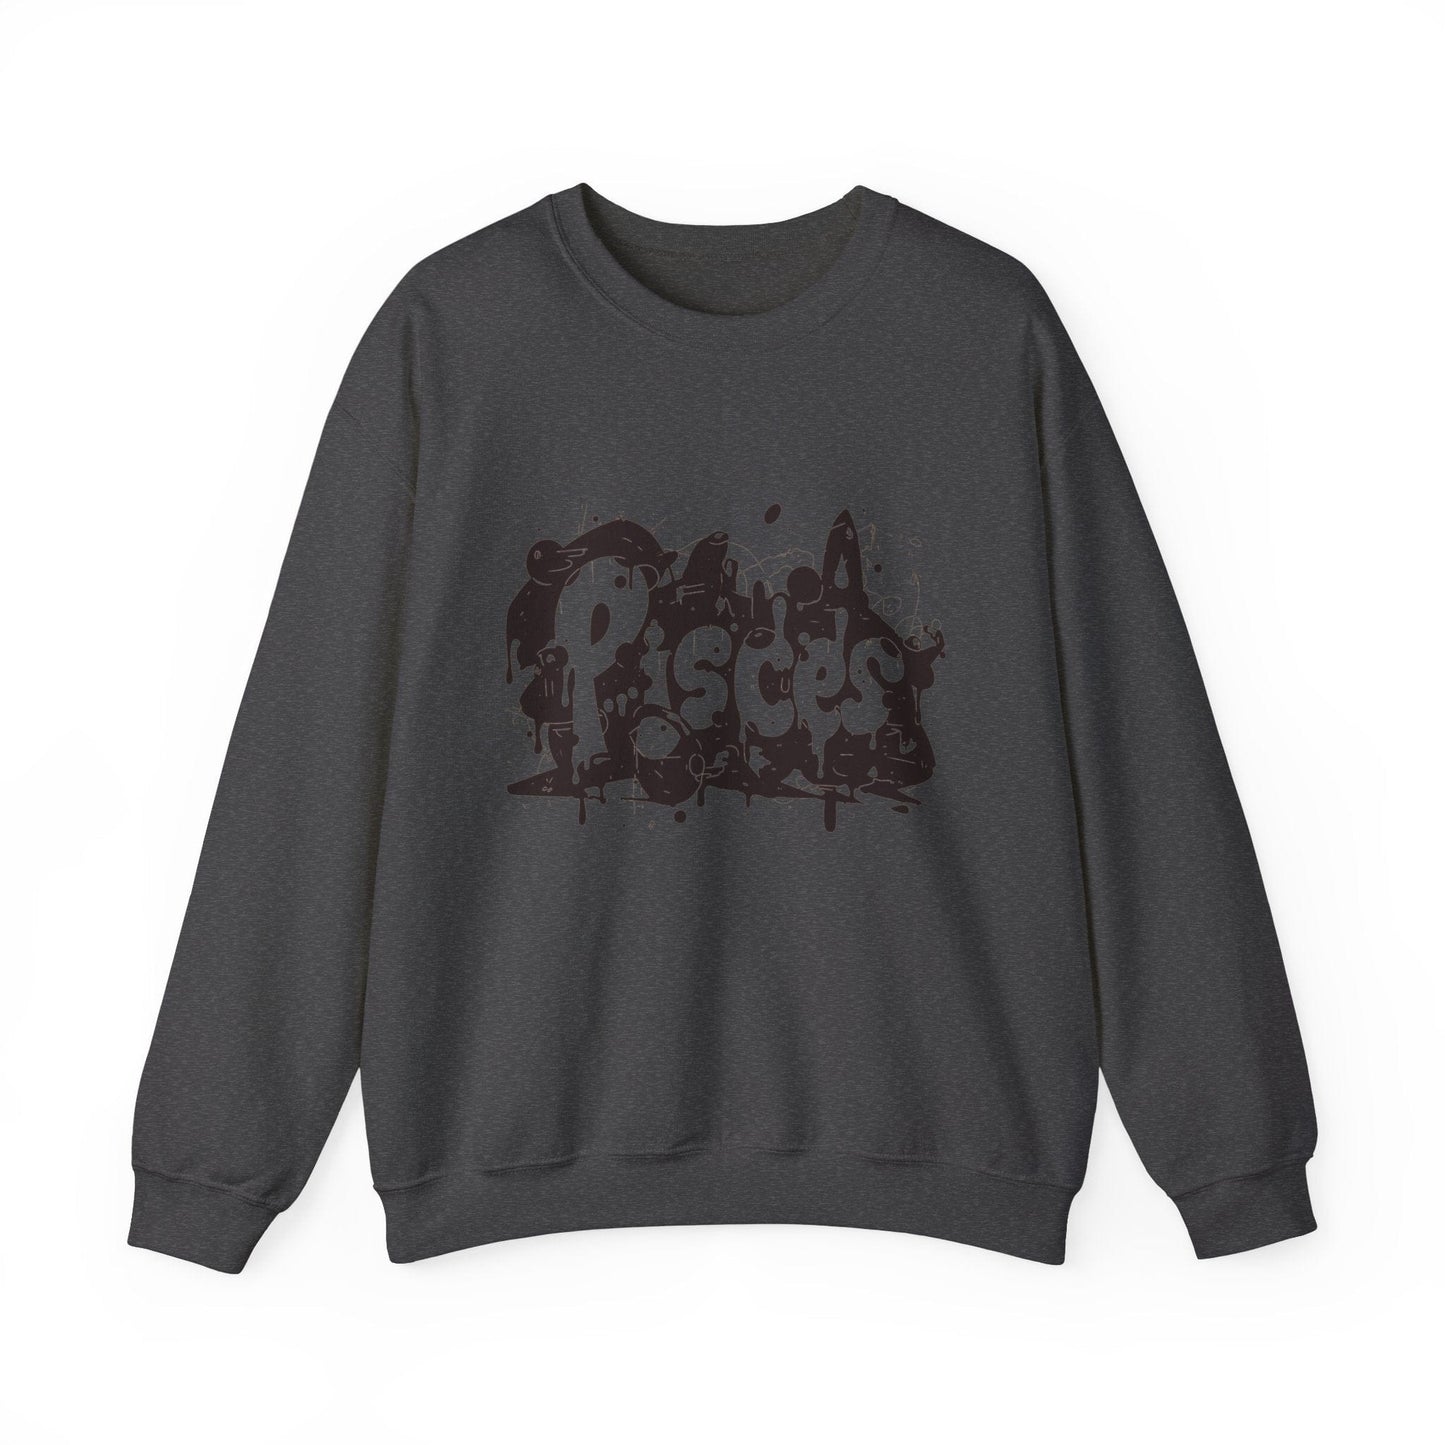 Sweatshirt S / Dark Heather Piscean Inkflow Pisces Sweater: Serene Depths